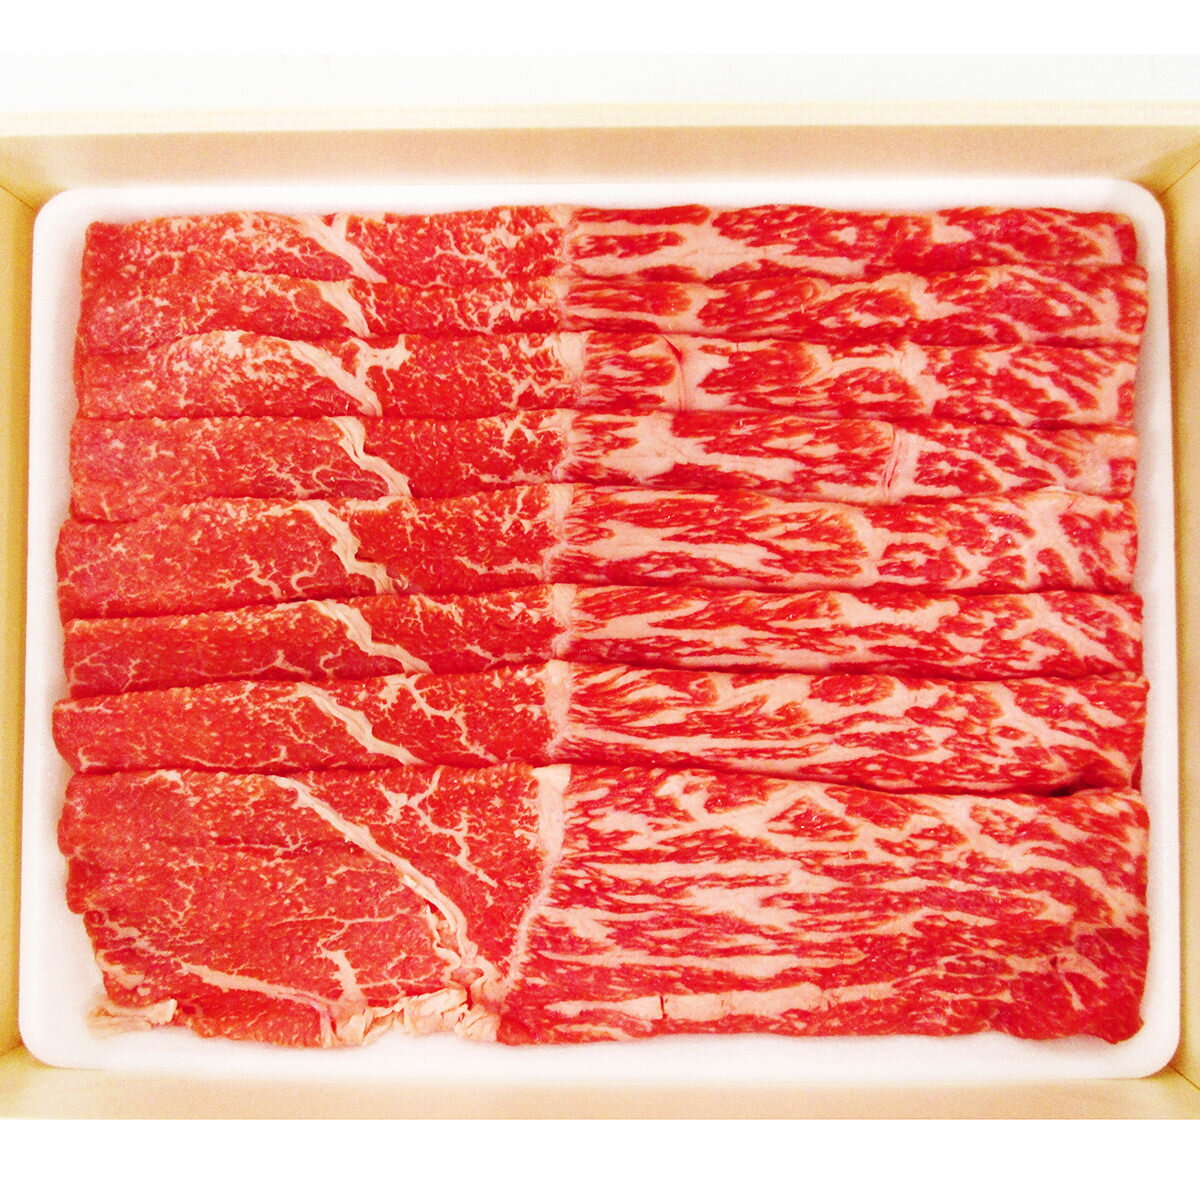 神戸牛 神戸ビーフ すき焼き用 赤身 メス限定 400g 牛肉 神戸牛 和牛 国産 ブランド牛 雌牛 すき焼き 精肉 銘柄牛 ごちそう 兵庫